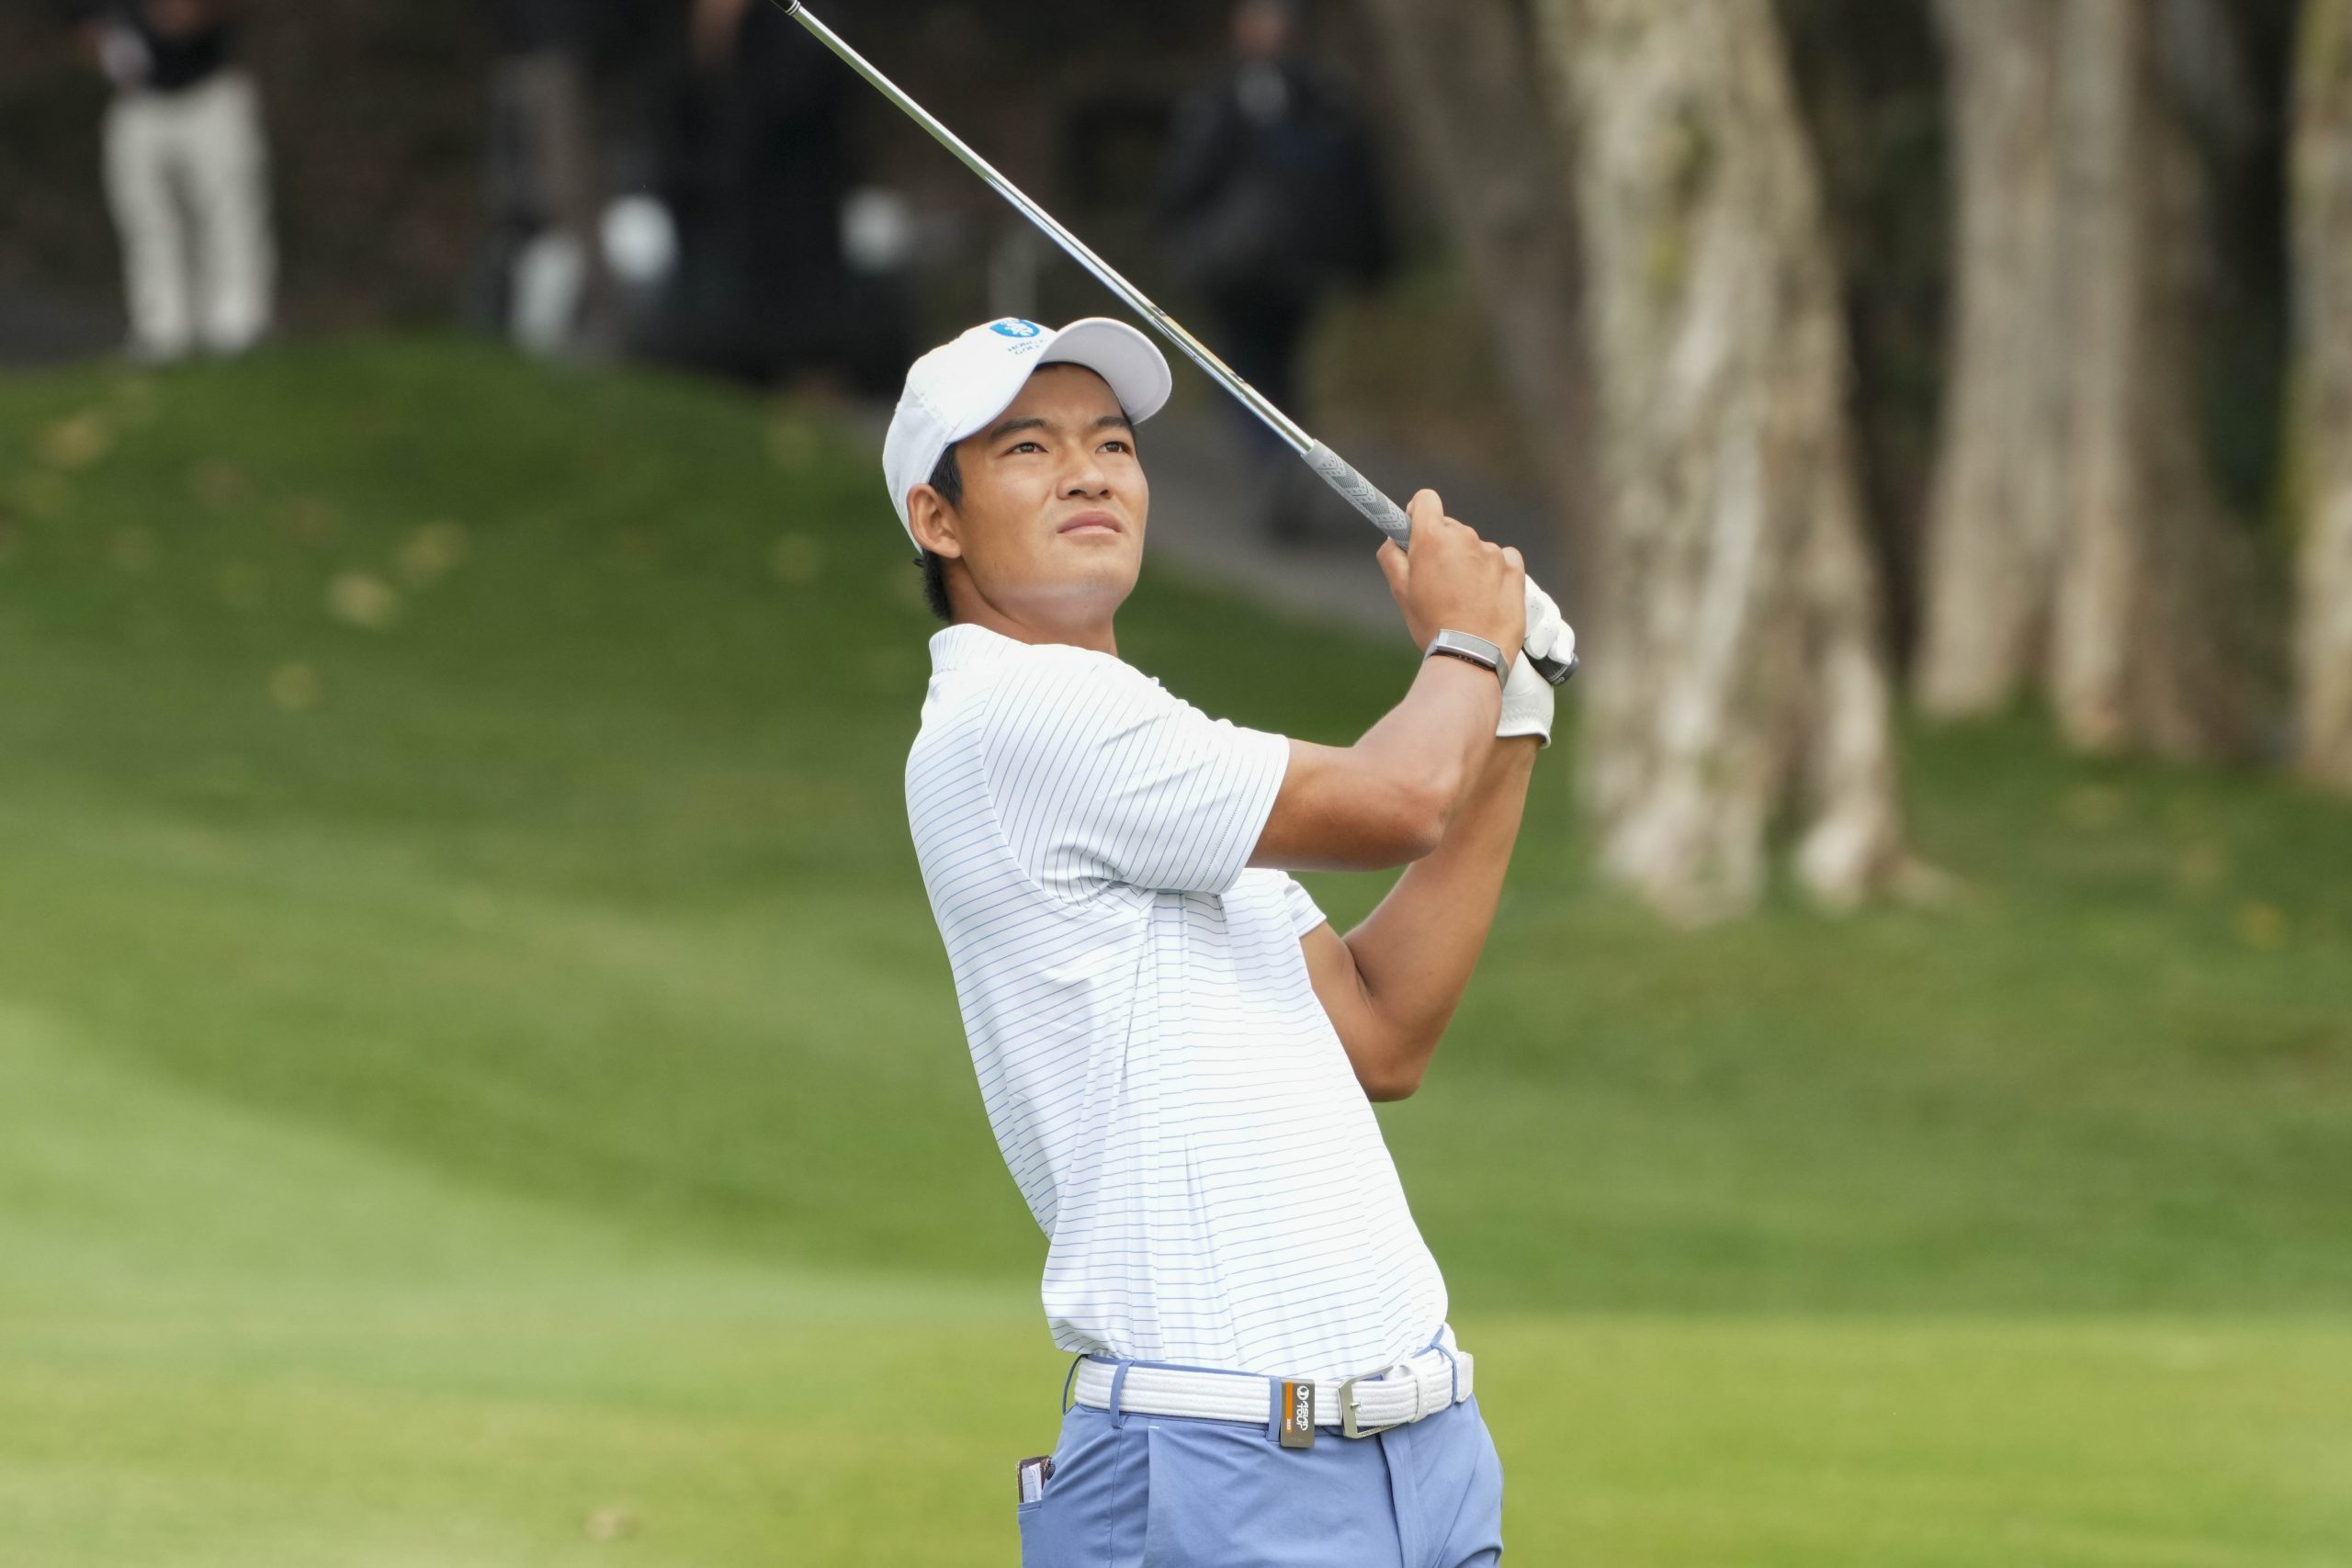 國際都會高爾夫球錦標賽首日賽事 香港球手許龍一暫列第二